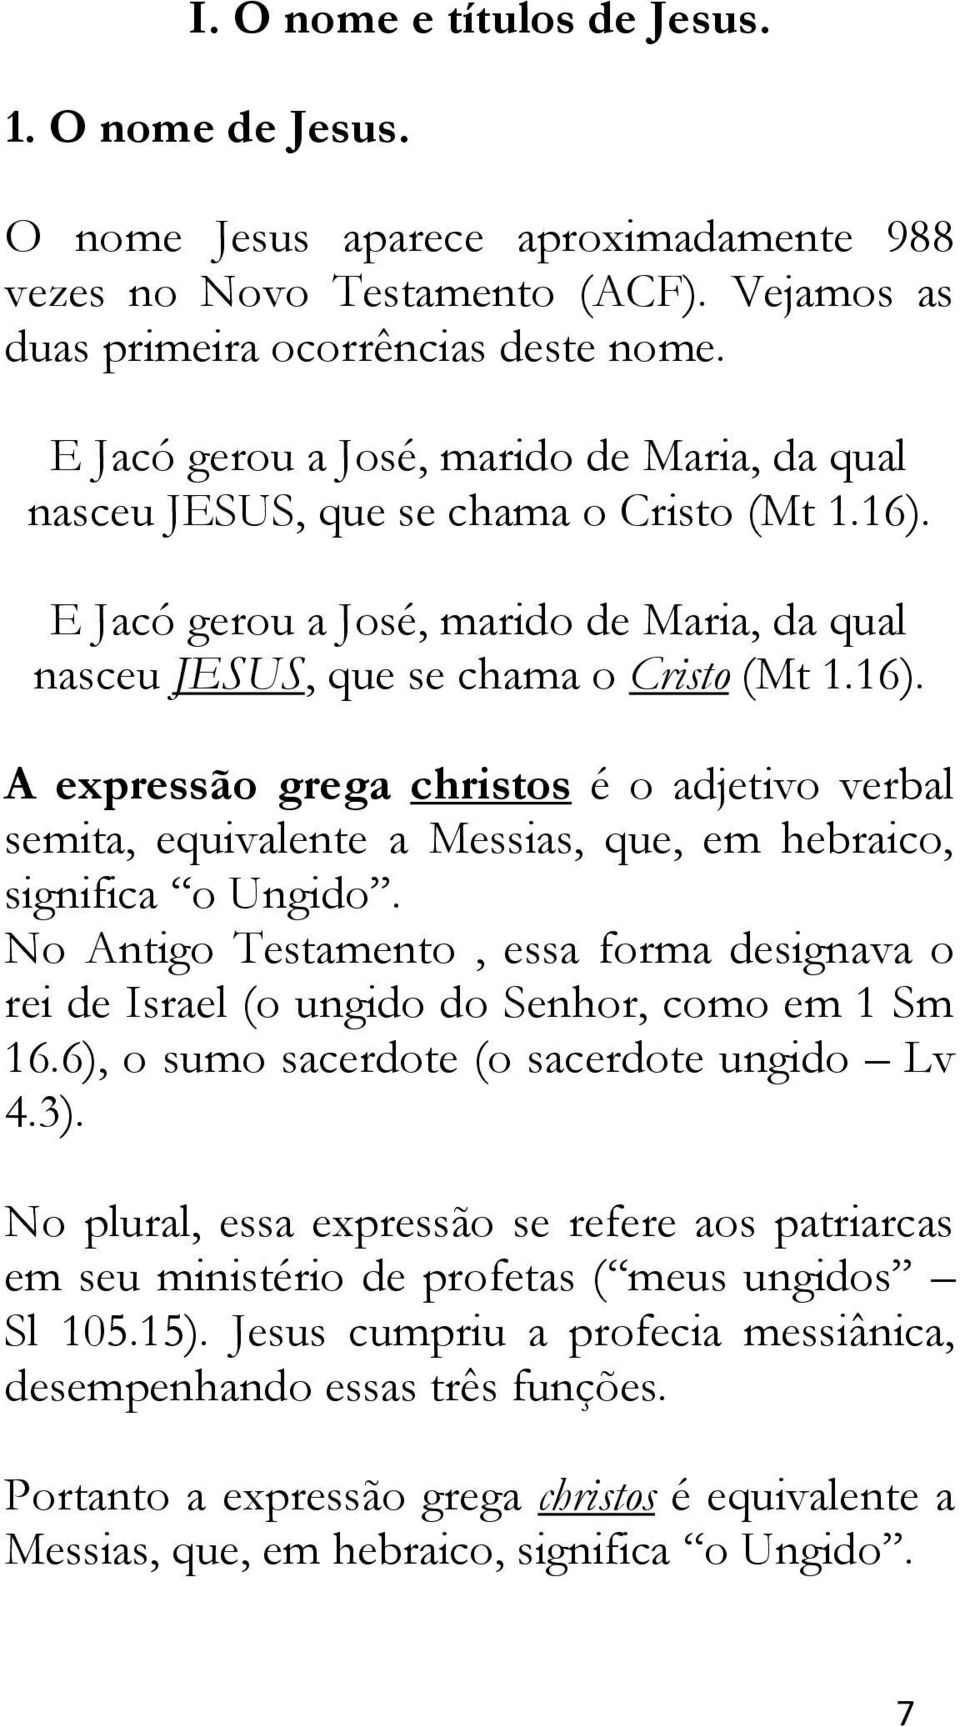 A expressão grega christos é o adjetivo verbal semita, equivalente a Messias, que, em hebraico, significa o Ungido.